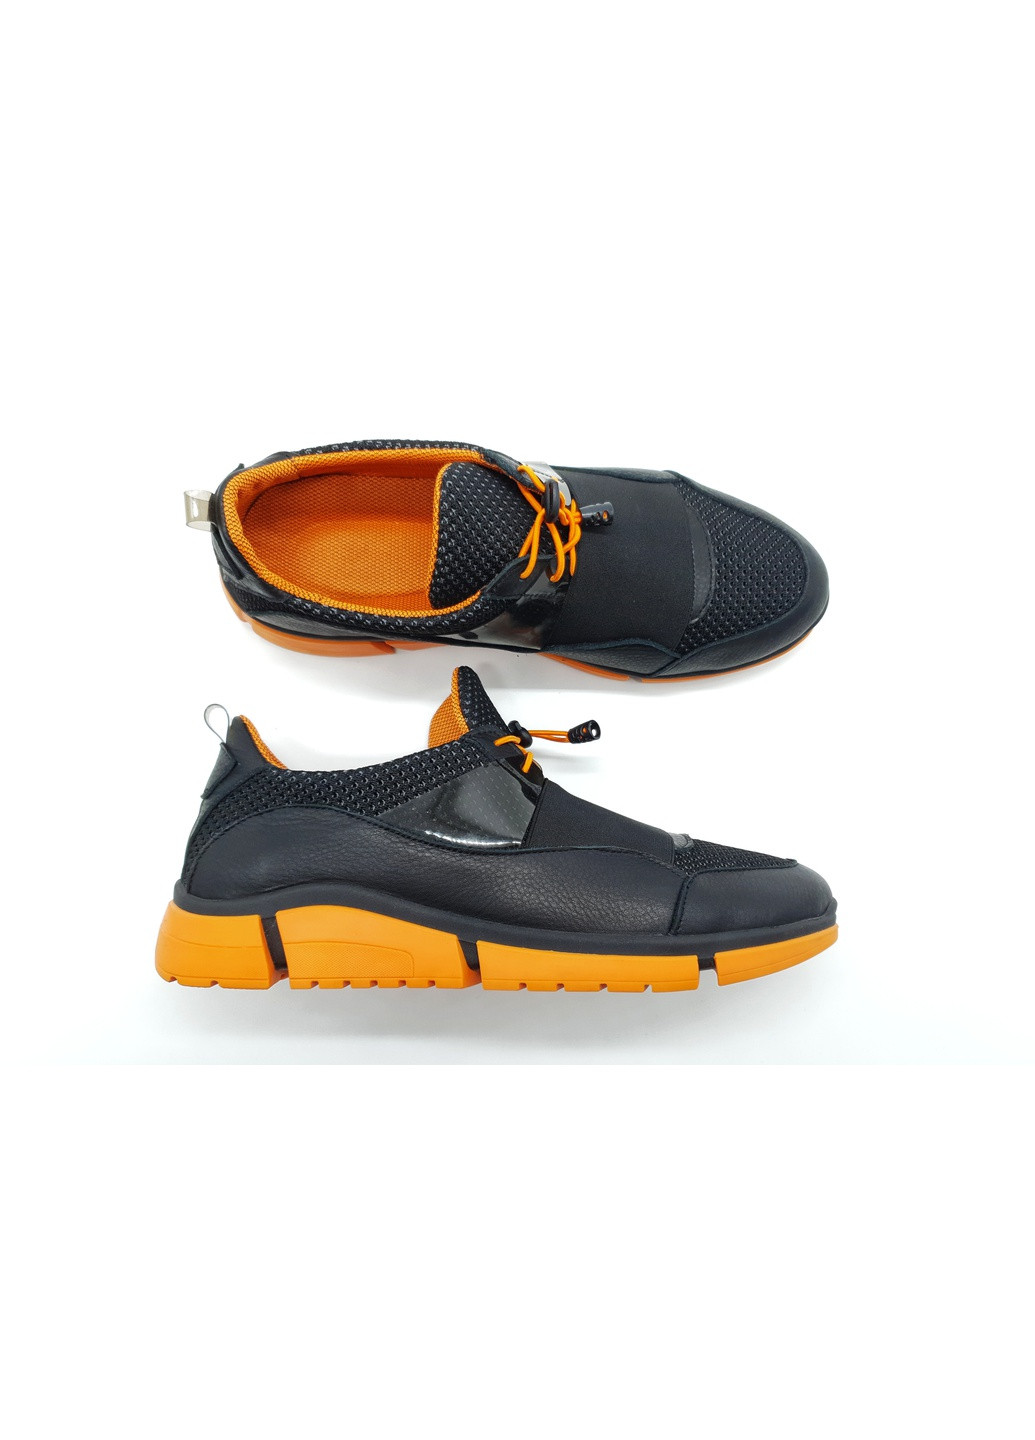 Черные мужские кроссовки черные кожаные g-19-2 27,5 см (р) Gross